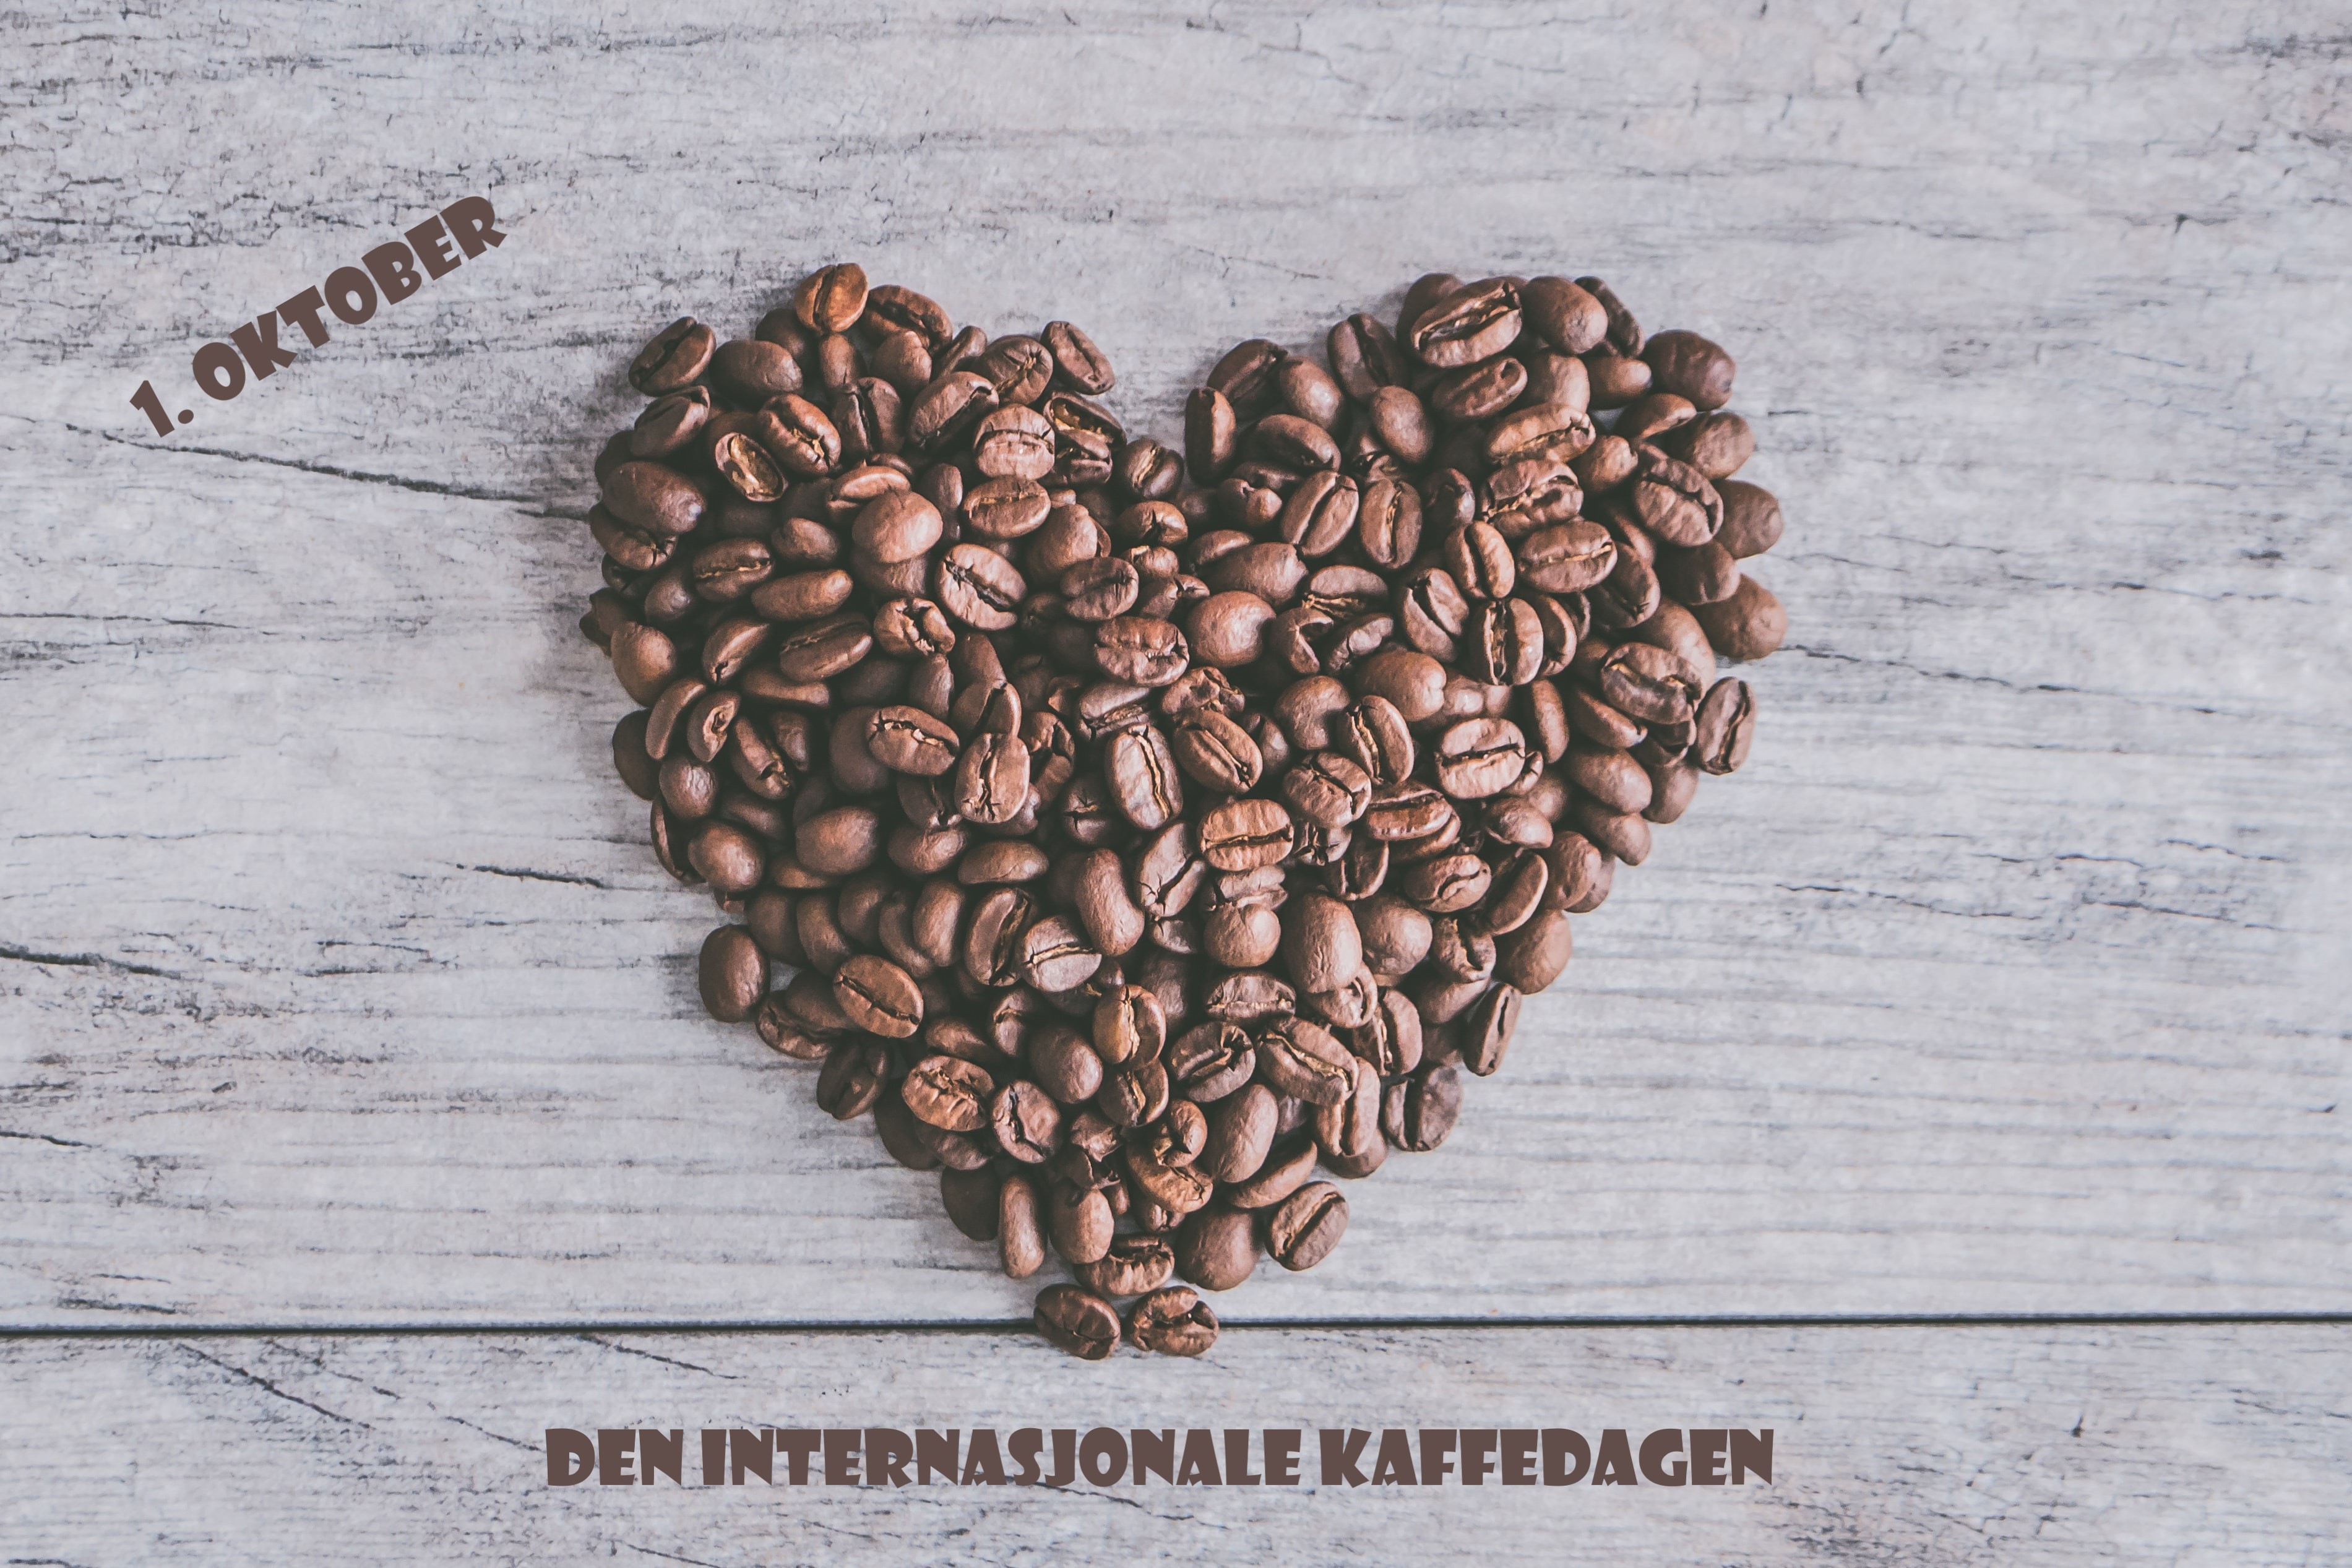 Internasjonale kaffedagen